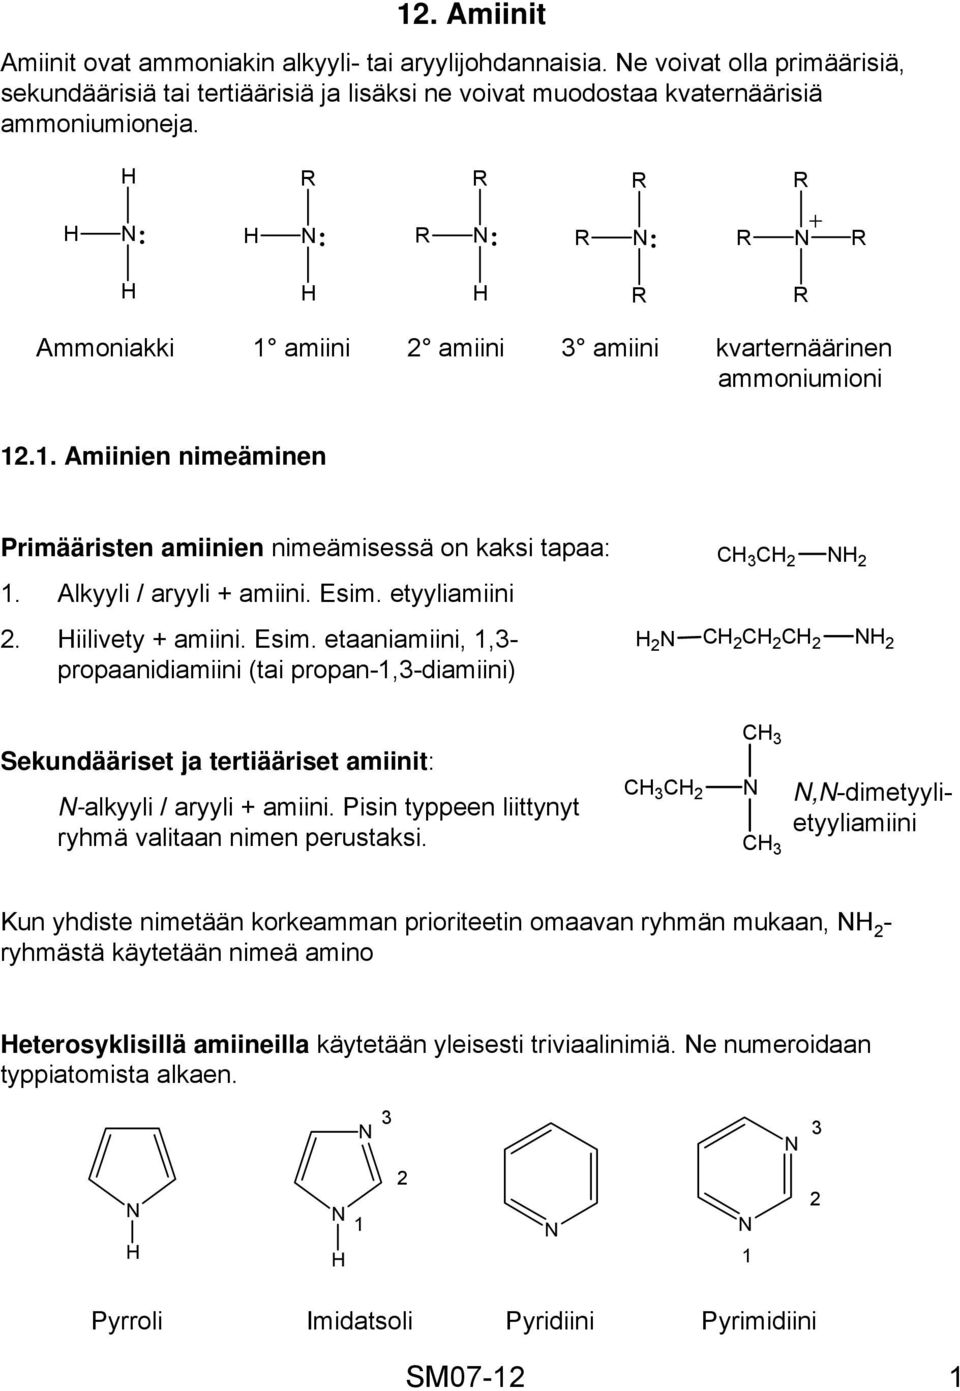 iilivety + amiini. Esim. etaaniamiini, 1,3- propaanidiamiini (tai propan-1,3-diamiini) 2 3 2 2 2 2 2 2 Sekundääriset ja tertiääriset amiinit: -alkyyli / aryyli + amiini.